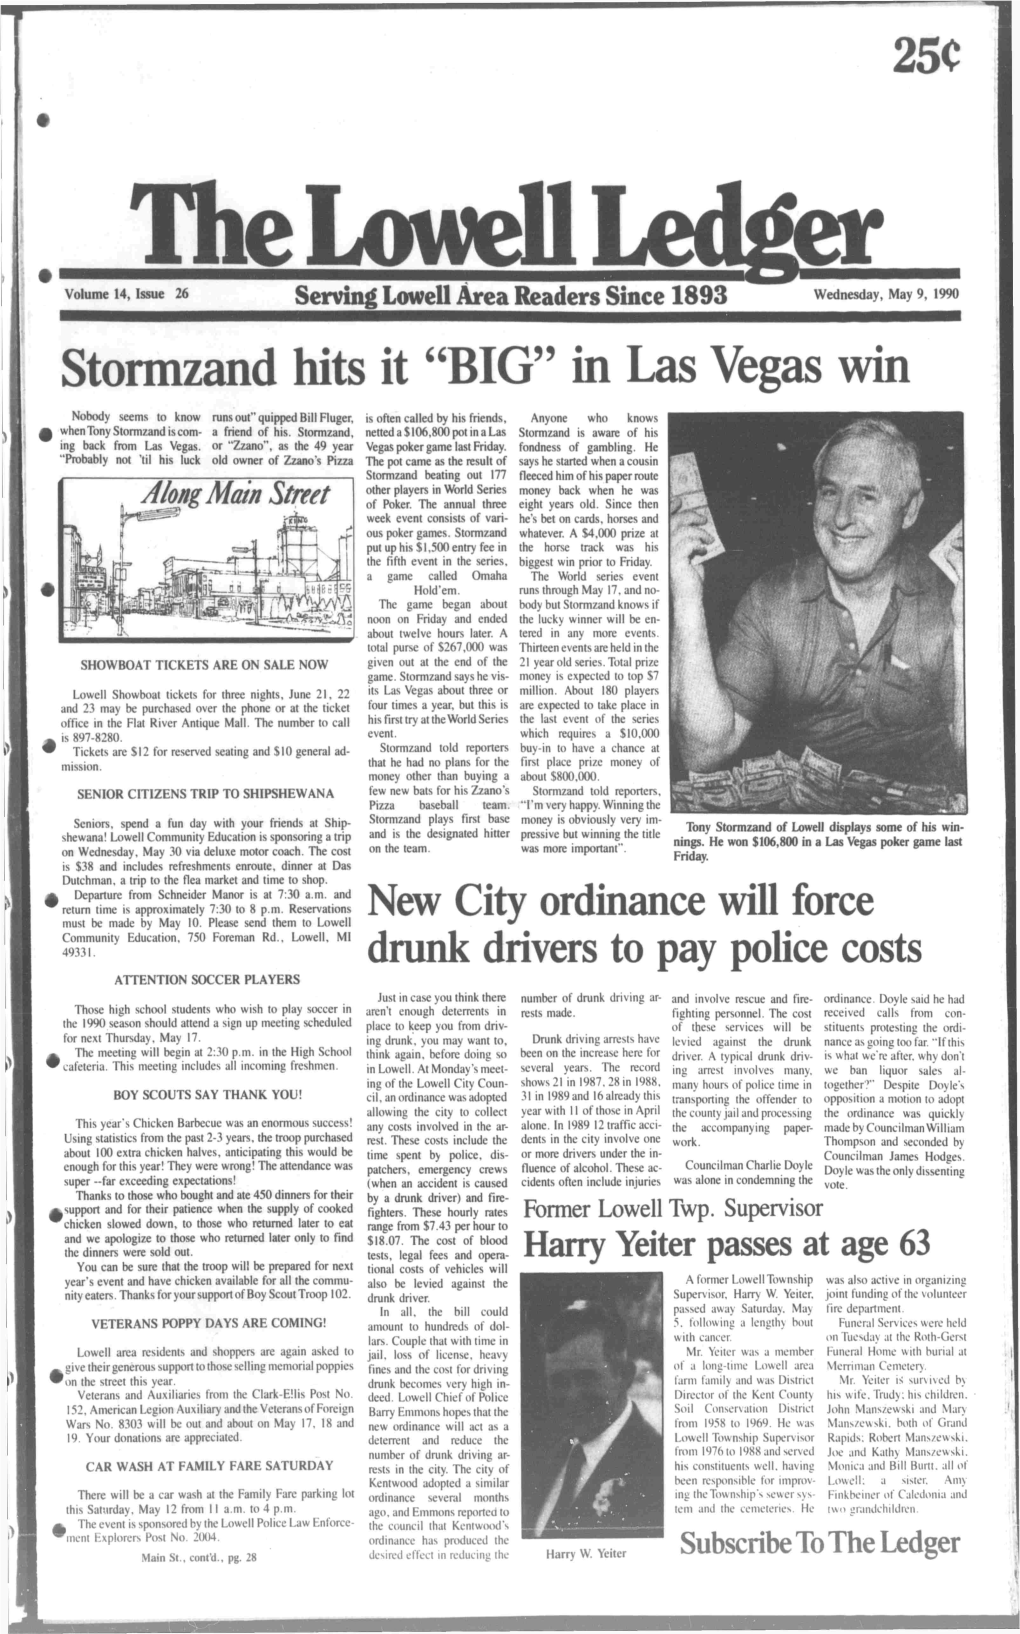 Stormzand Hits It "BIG" in Las Vegas Win